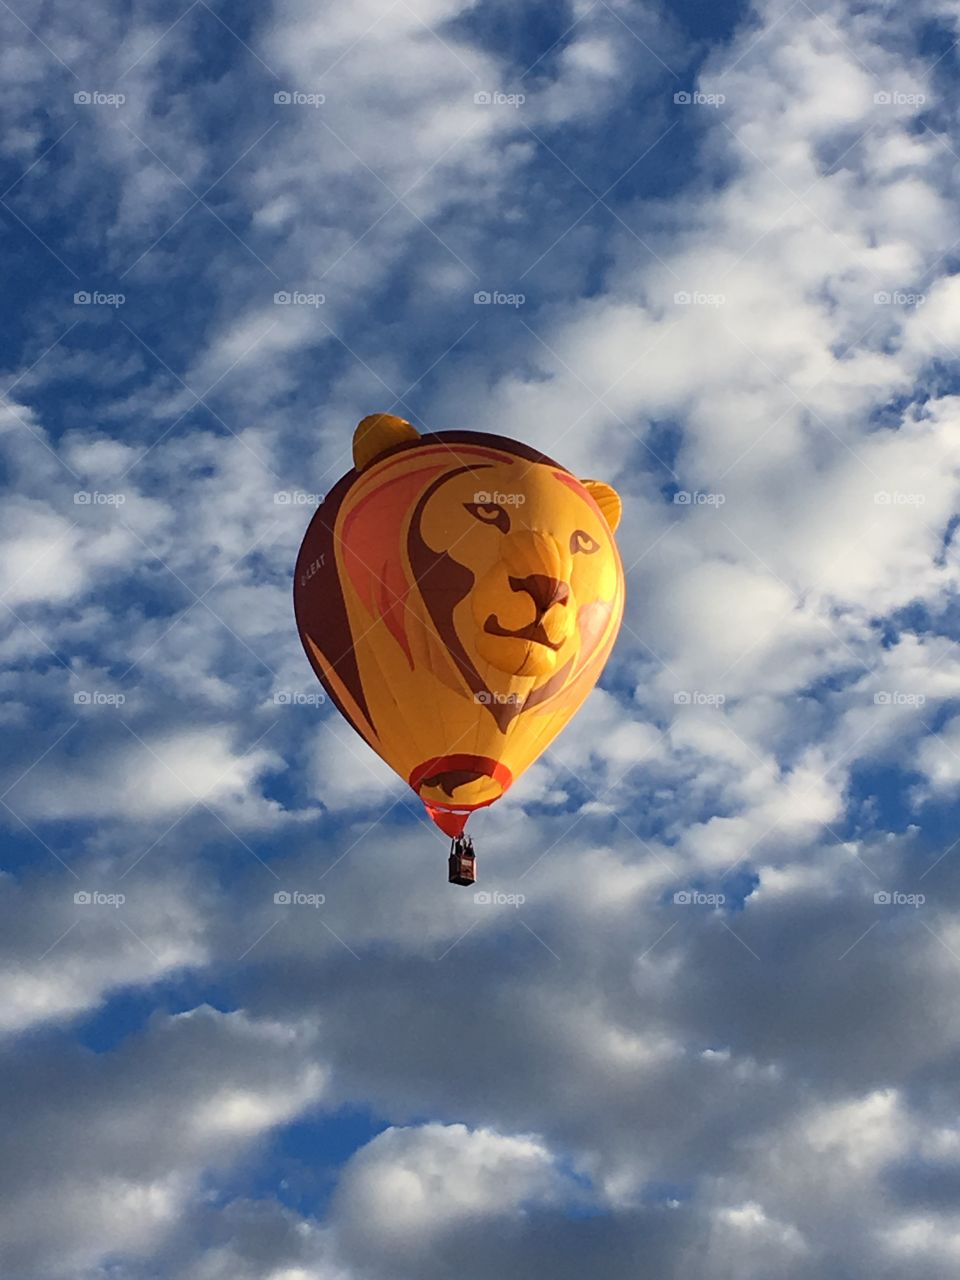 Lion Hot Air Balloon 